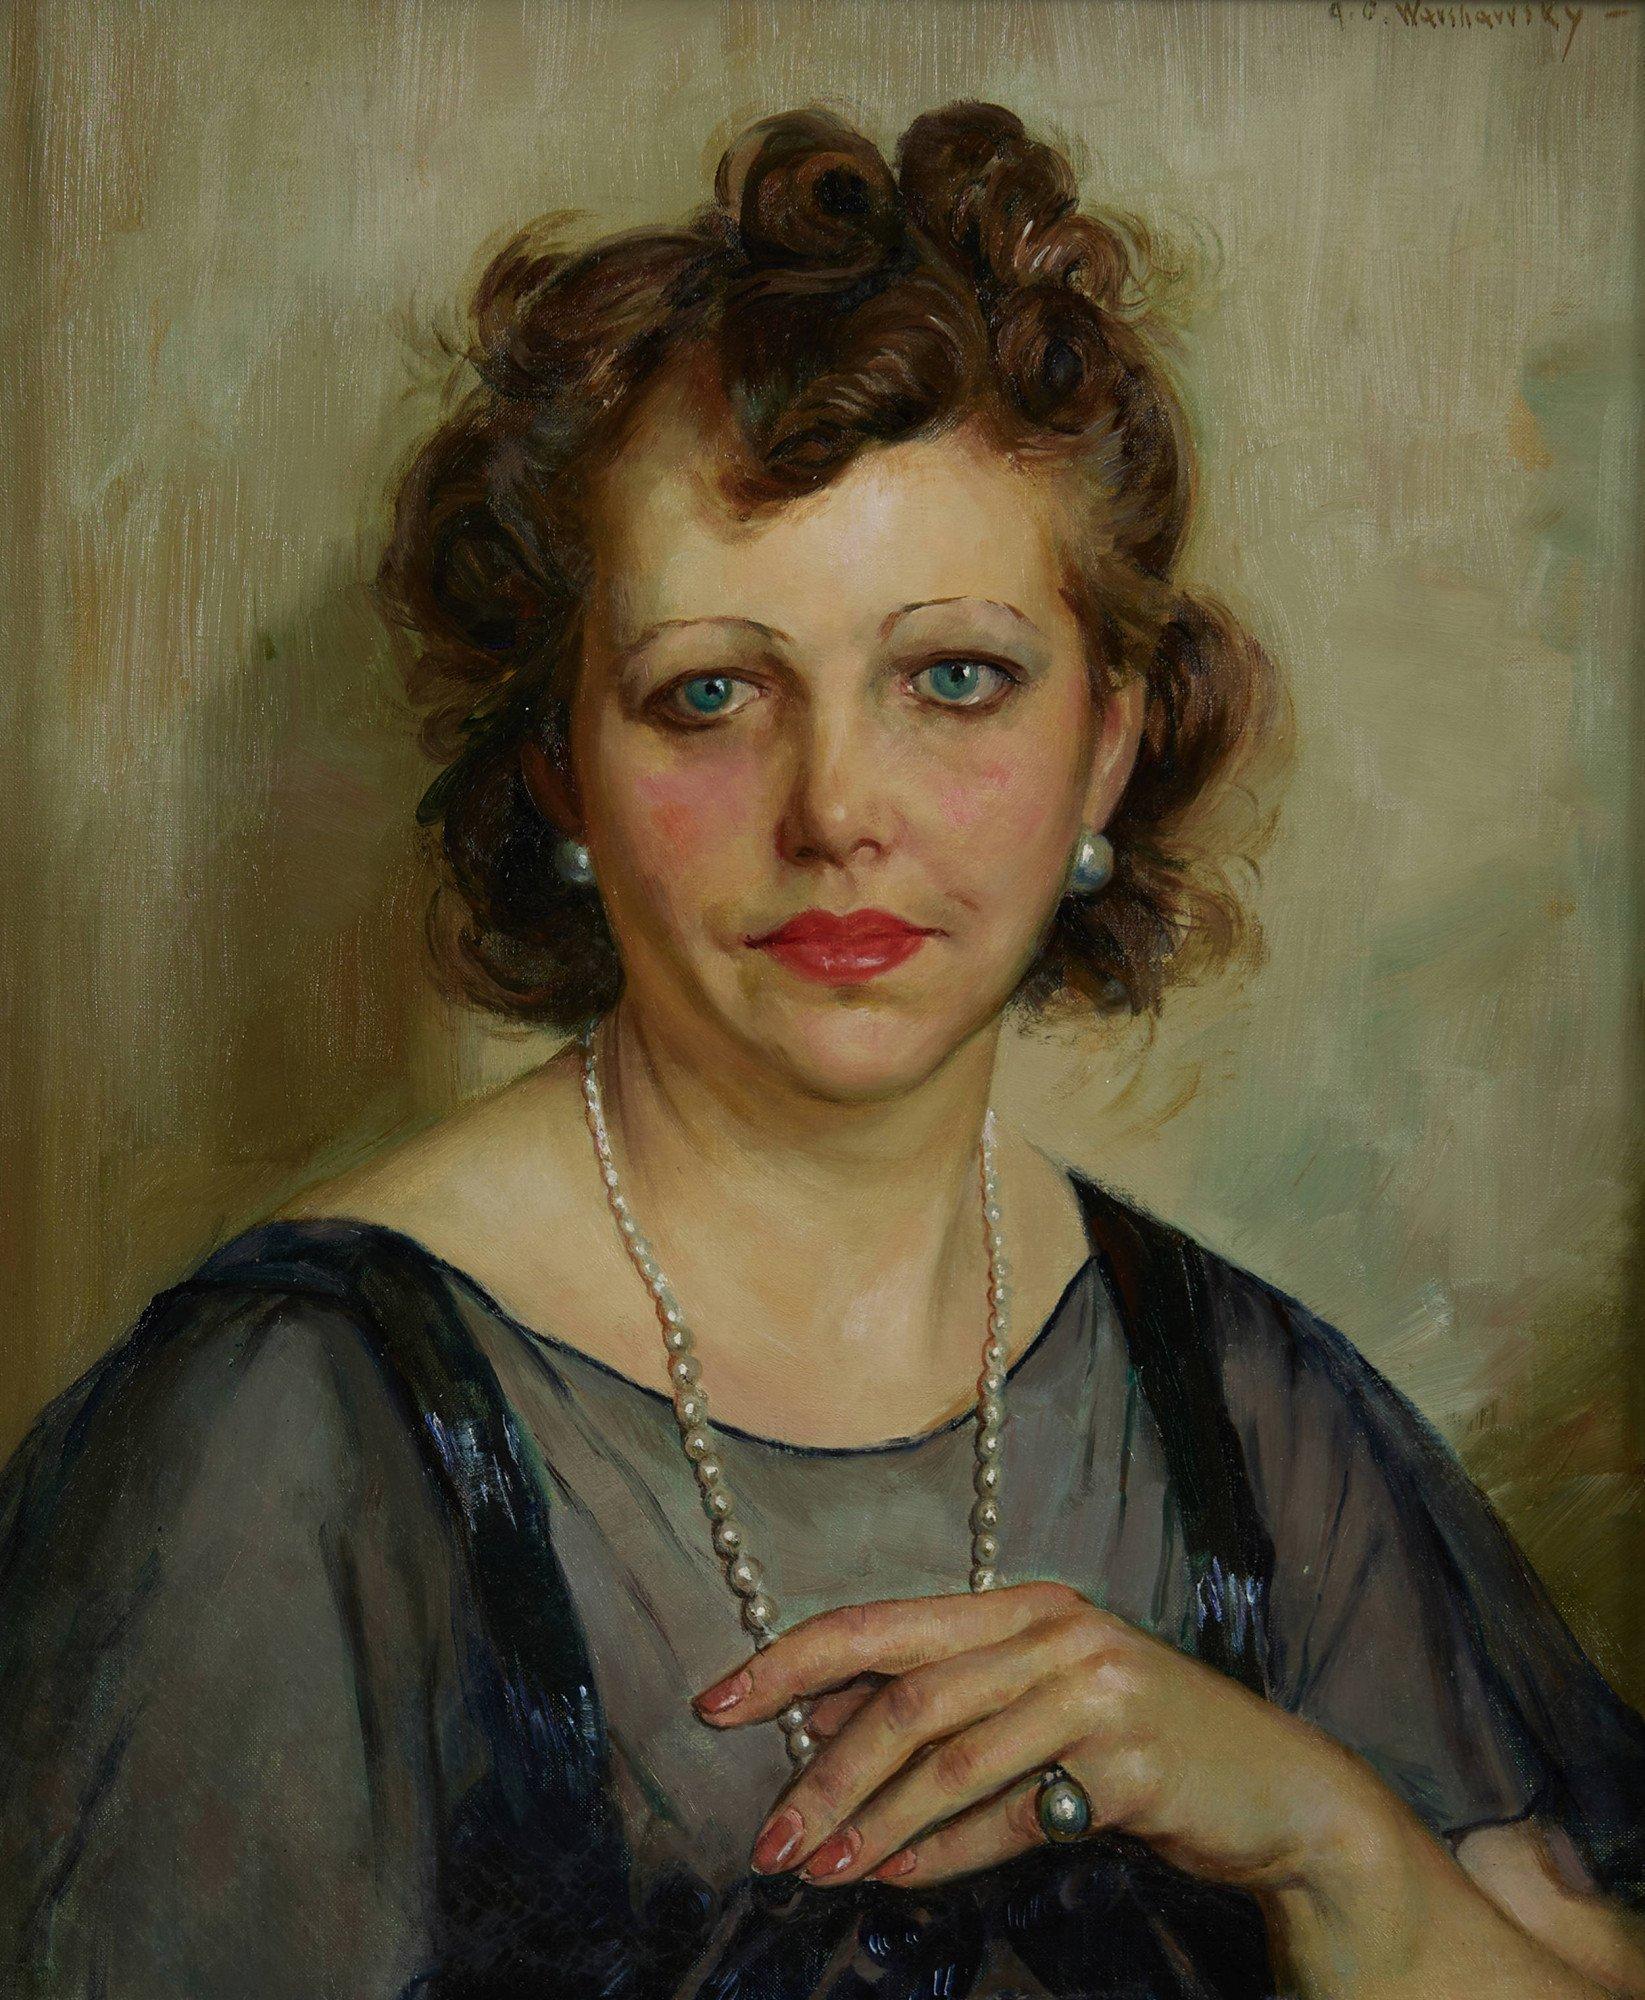 The Antique Dealer, 20th Century Oil Portrait of a Woman, Cleveland School